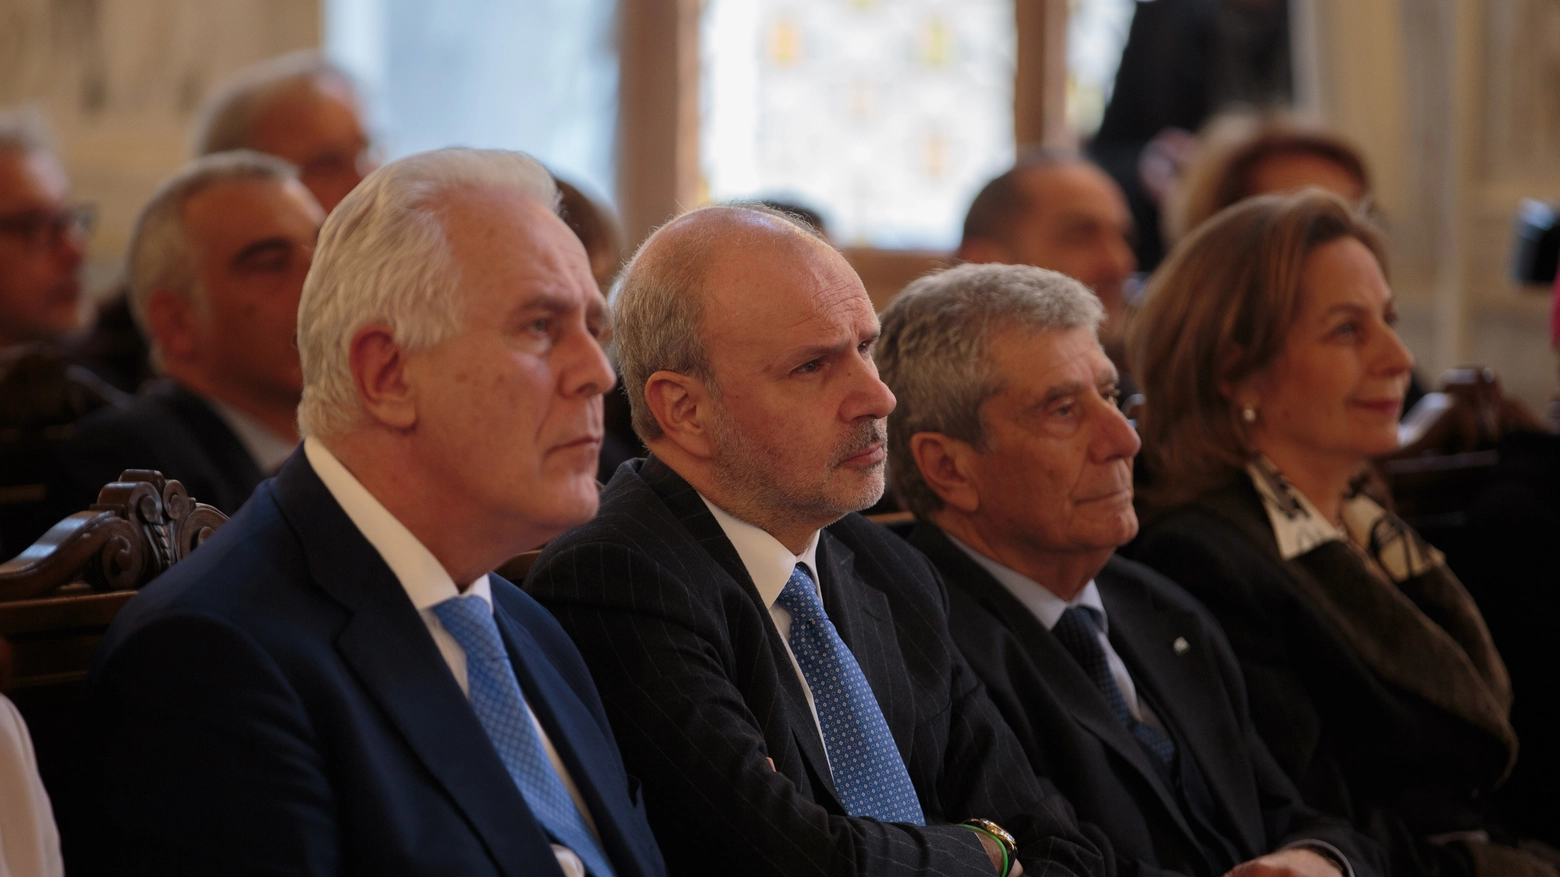 Stamani il ministro della Salute ha partecipato all’inaugurazione dell’anno accademico dell'Università di Pisa